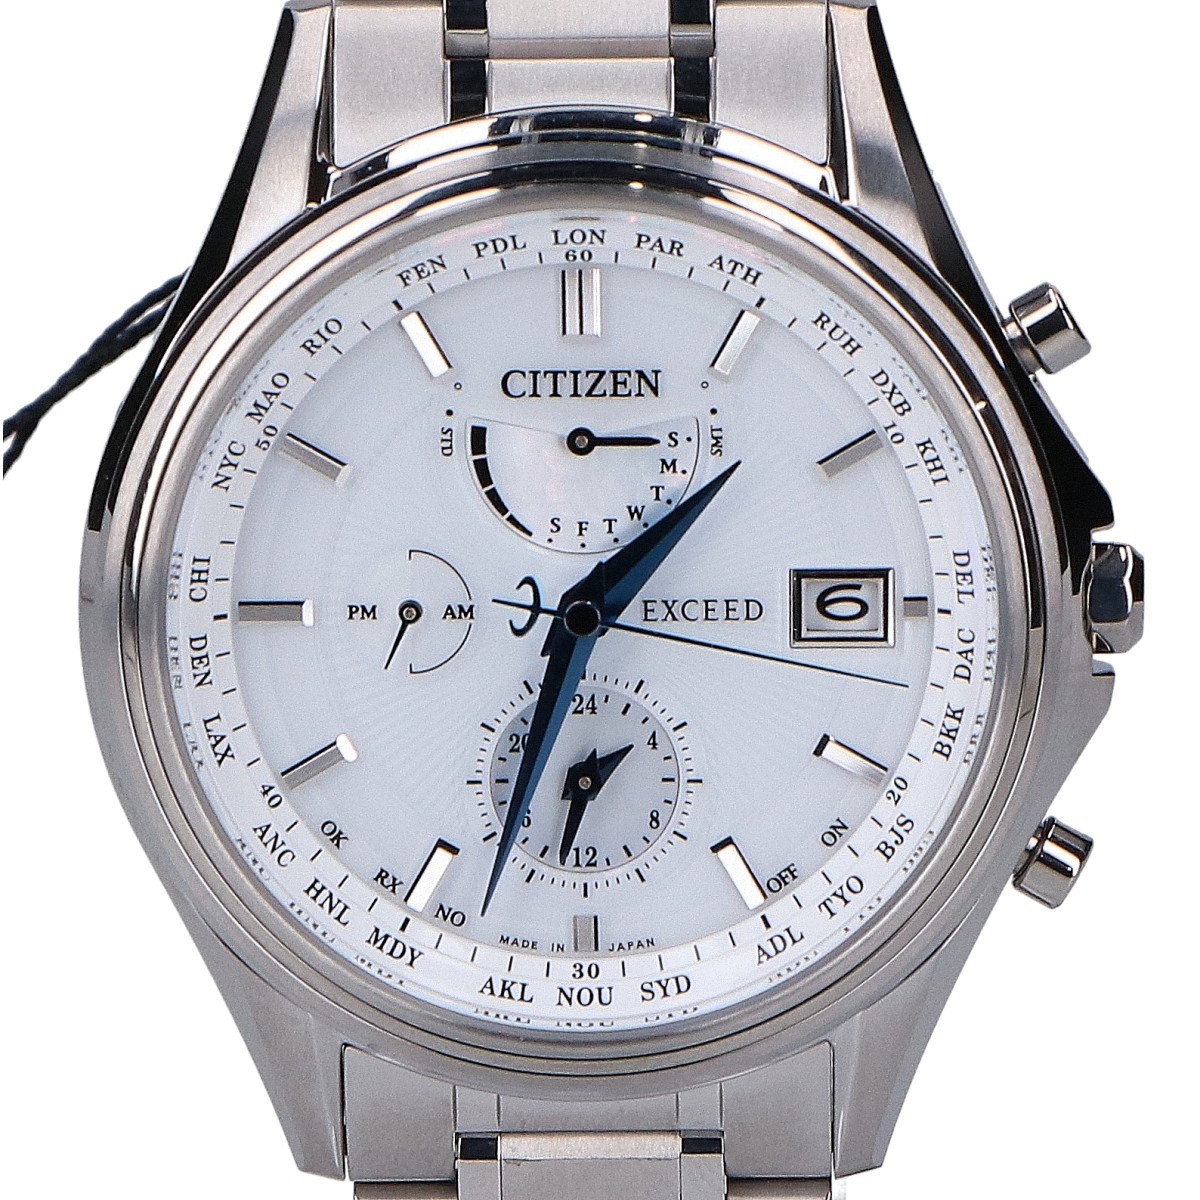 シチズンのAT9130-69W エクシード 45周年記念モデル エコドライブ電波腕時計の買取実績です。